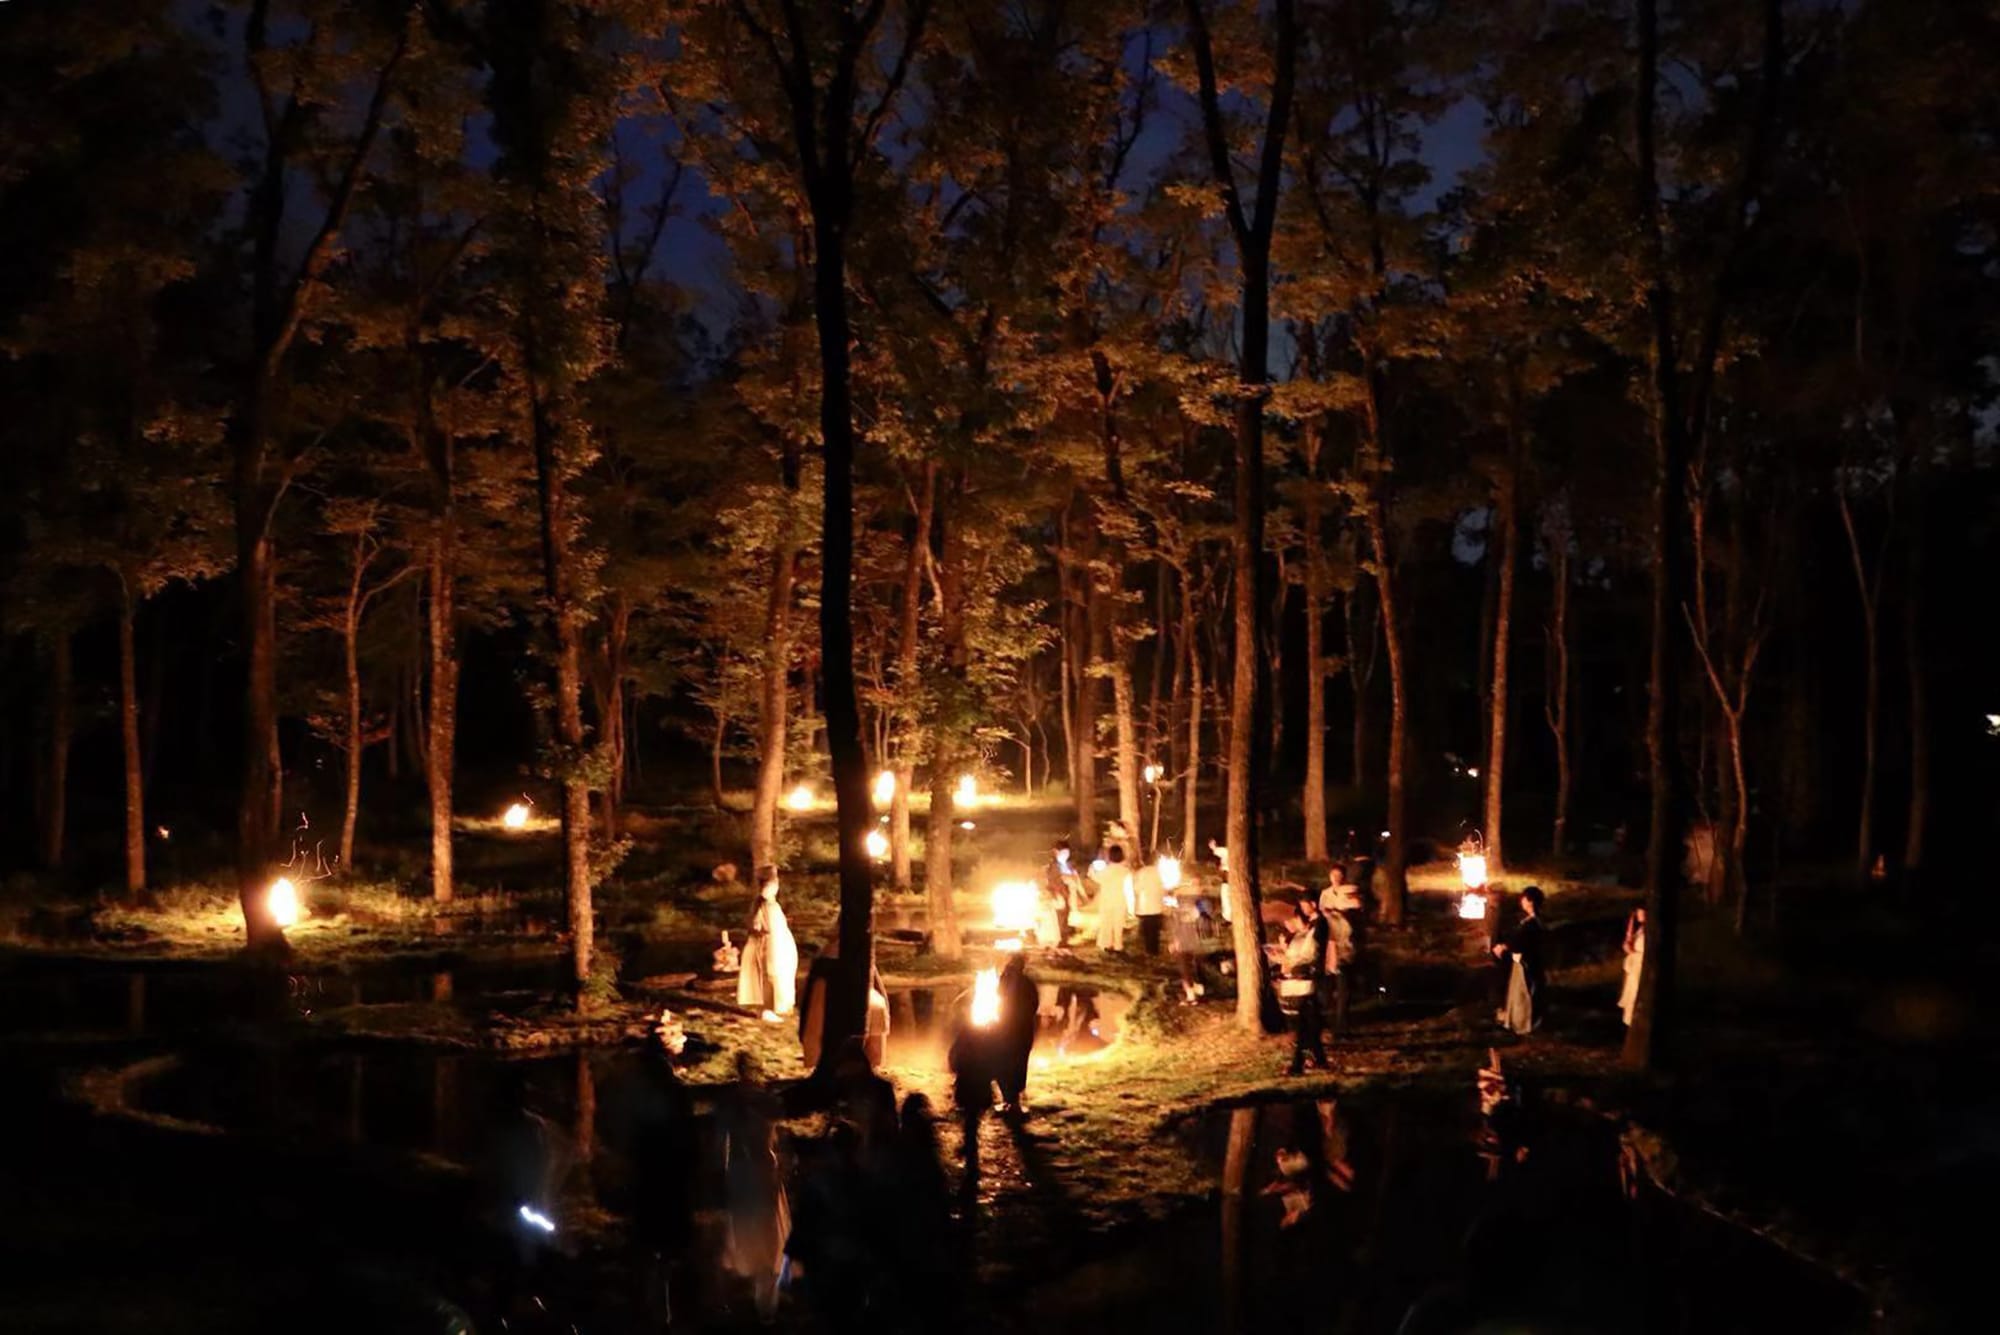 「水庭と空和」アートナイトイベント・インスタレーション。2019年10月に開催された「山のシューレ」では、夜の水庭で能楽師、安田登が舞を披露した。このために制作した近藤の作品（大蔵寂土水火盤）に火を灯した。